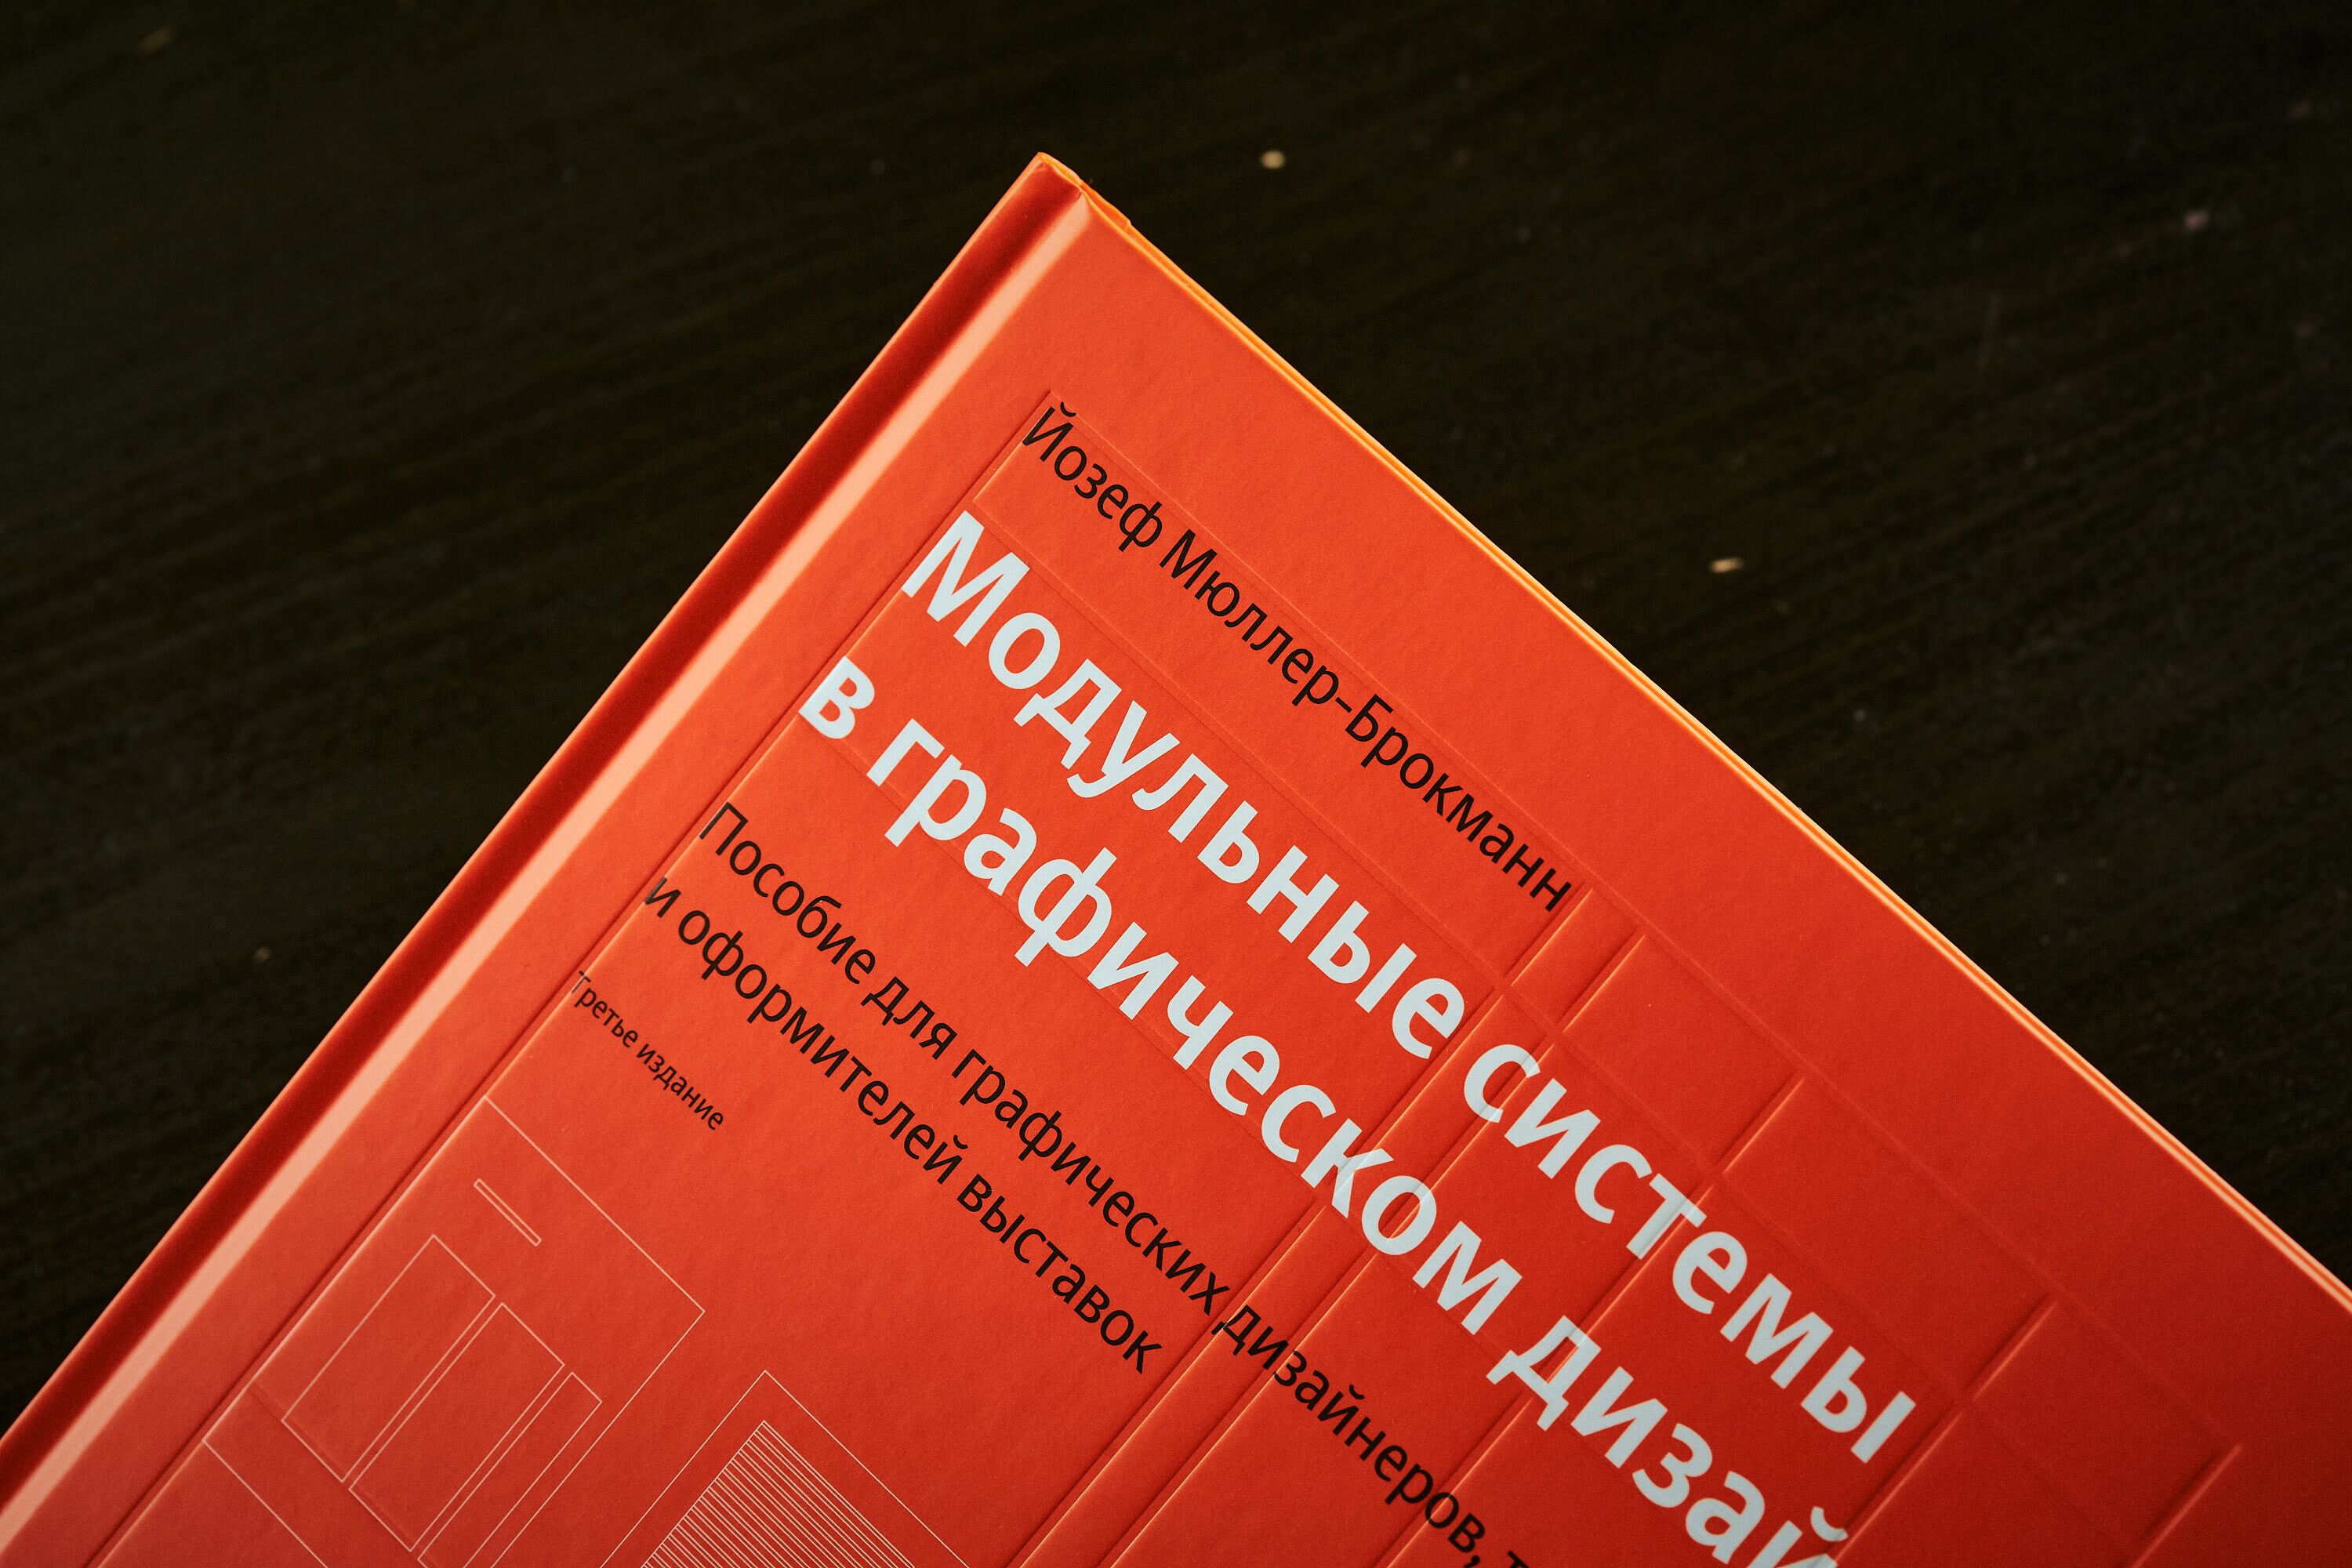 Модульные системы в графическом дизайне (3 издание)